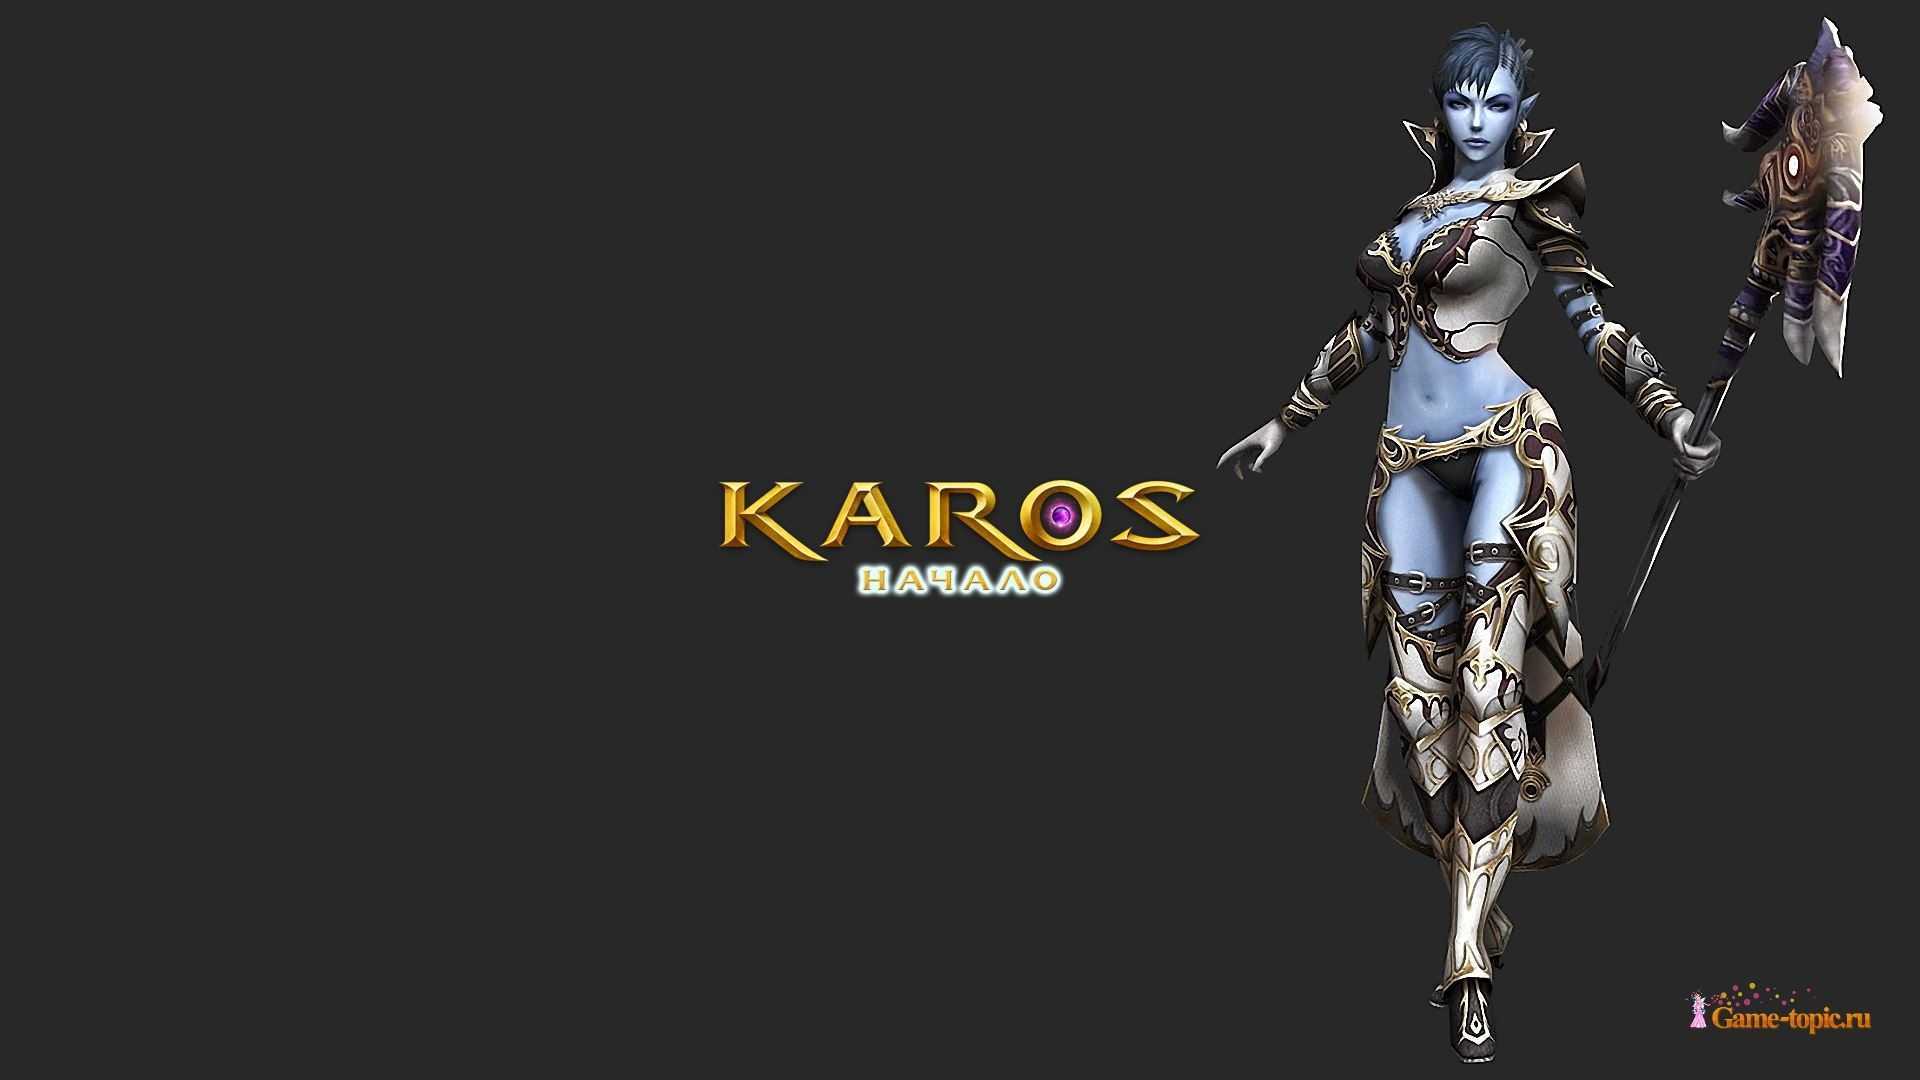 Карос играть. Карос. Karos персонажи. Карос логотип. Карос оф сайт.